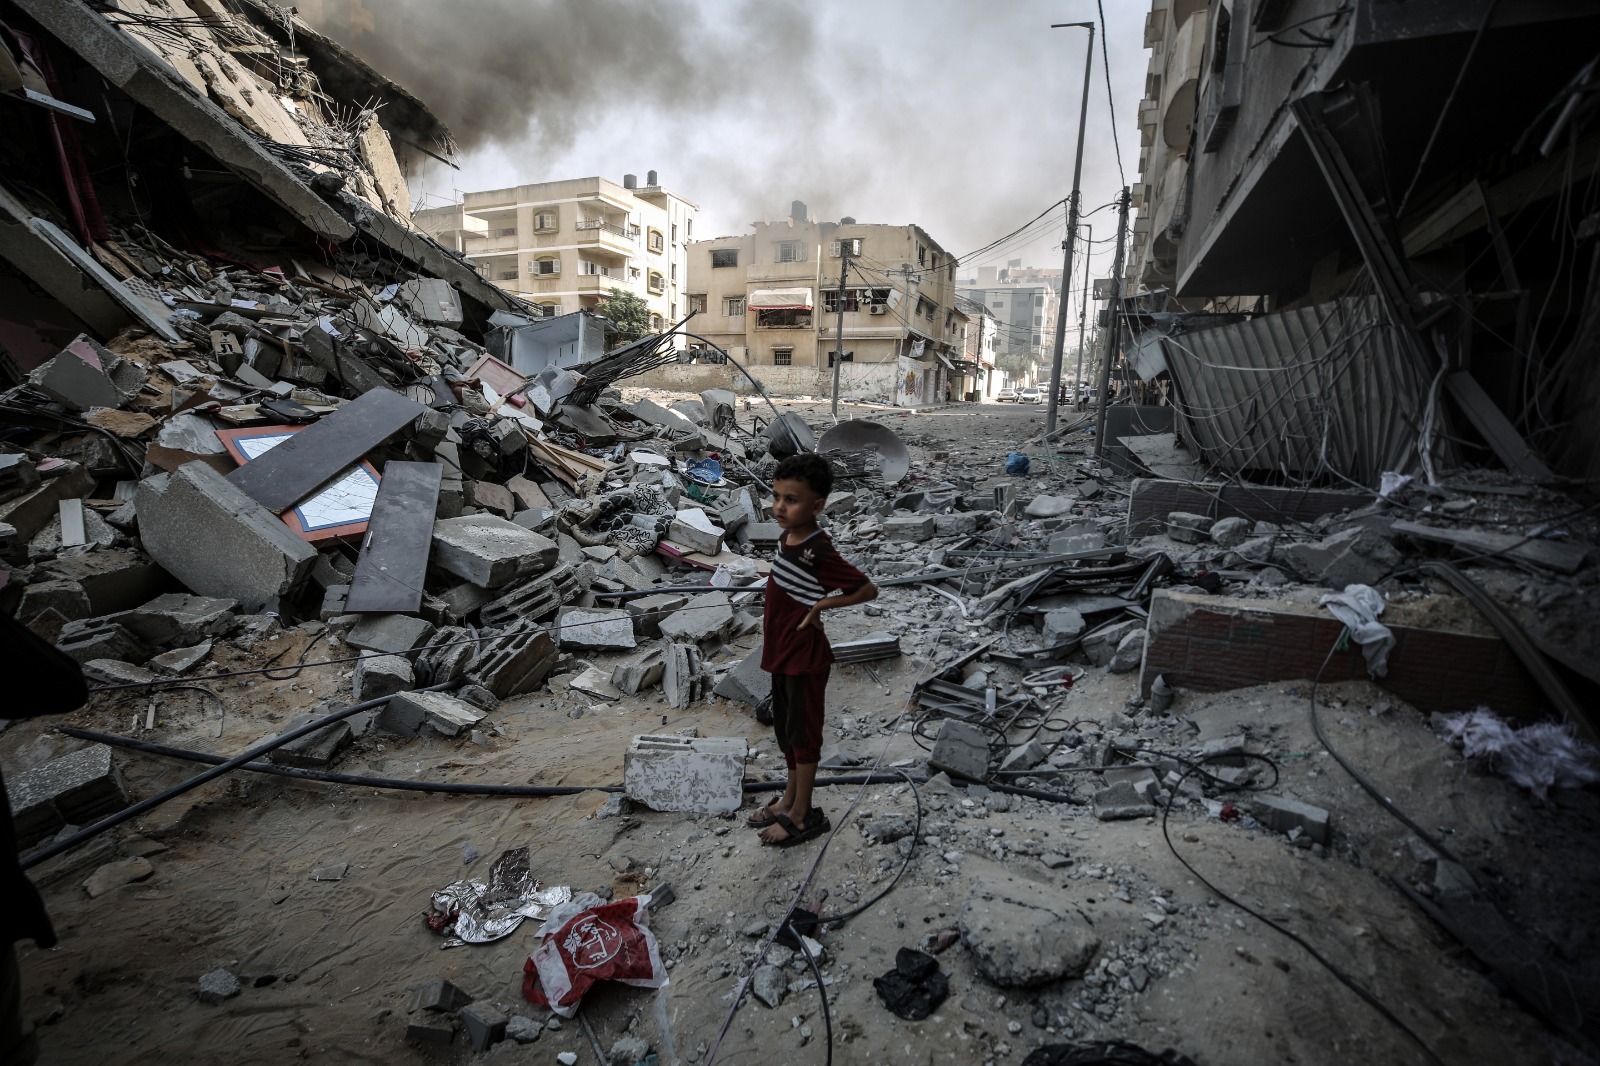 Qatar says Gaza ceasefire mediation efforts still ongoing